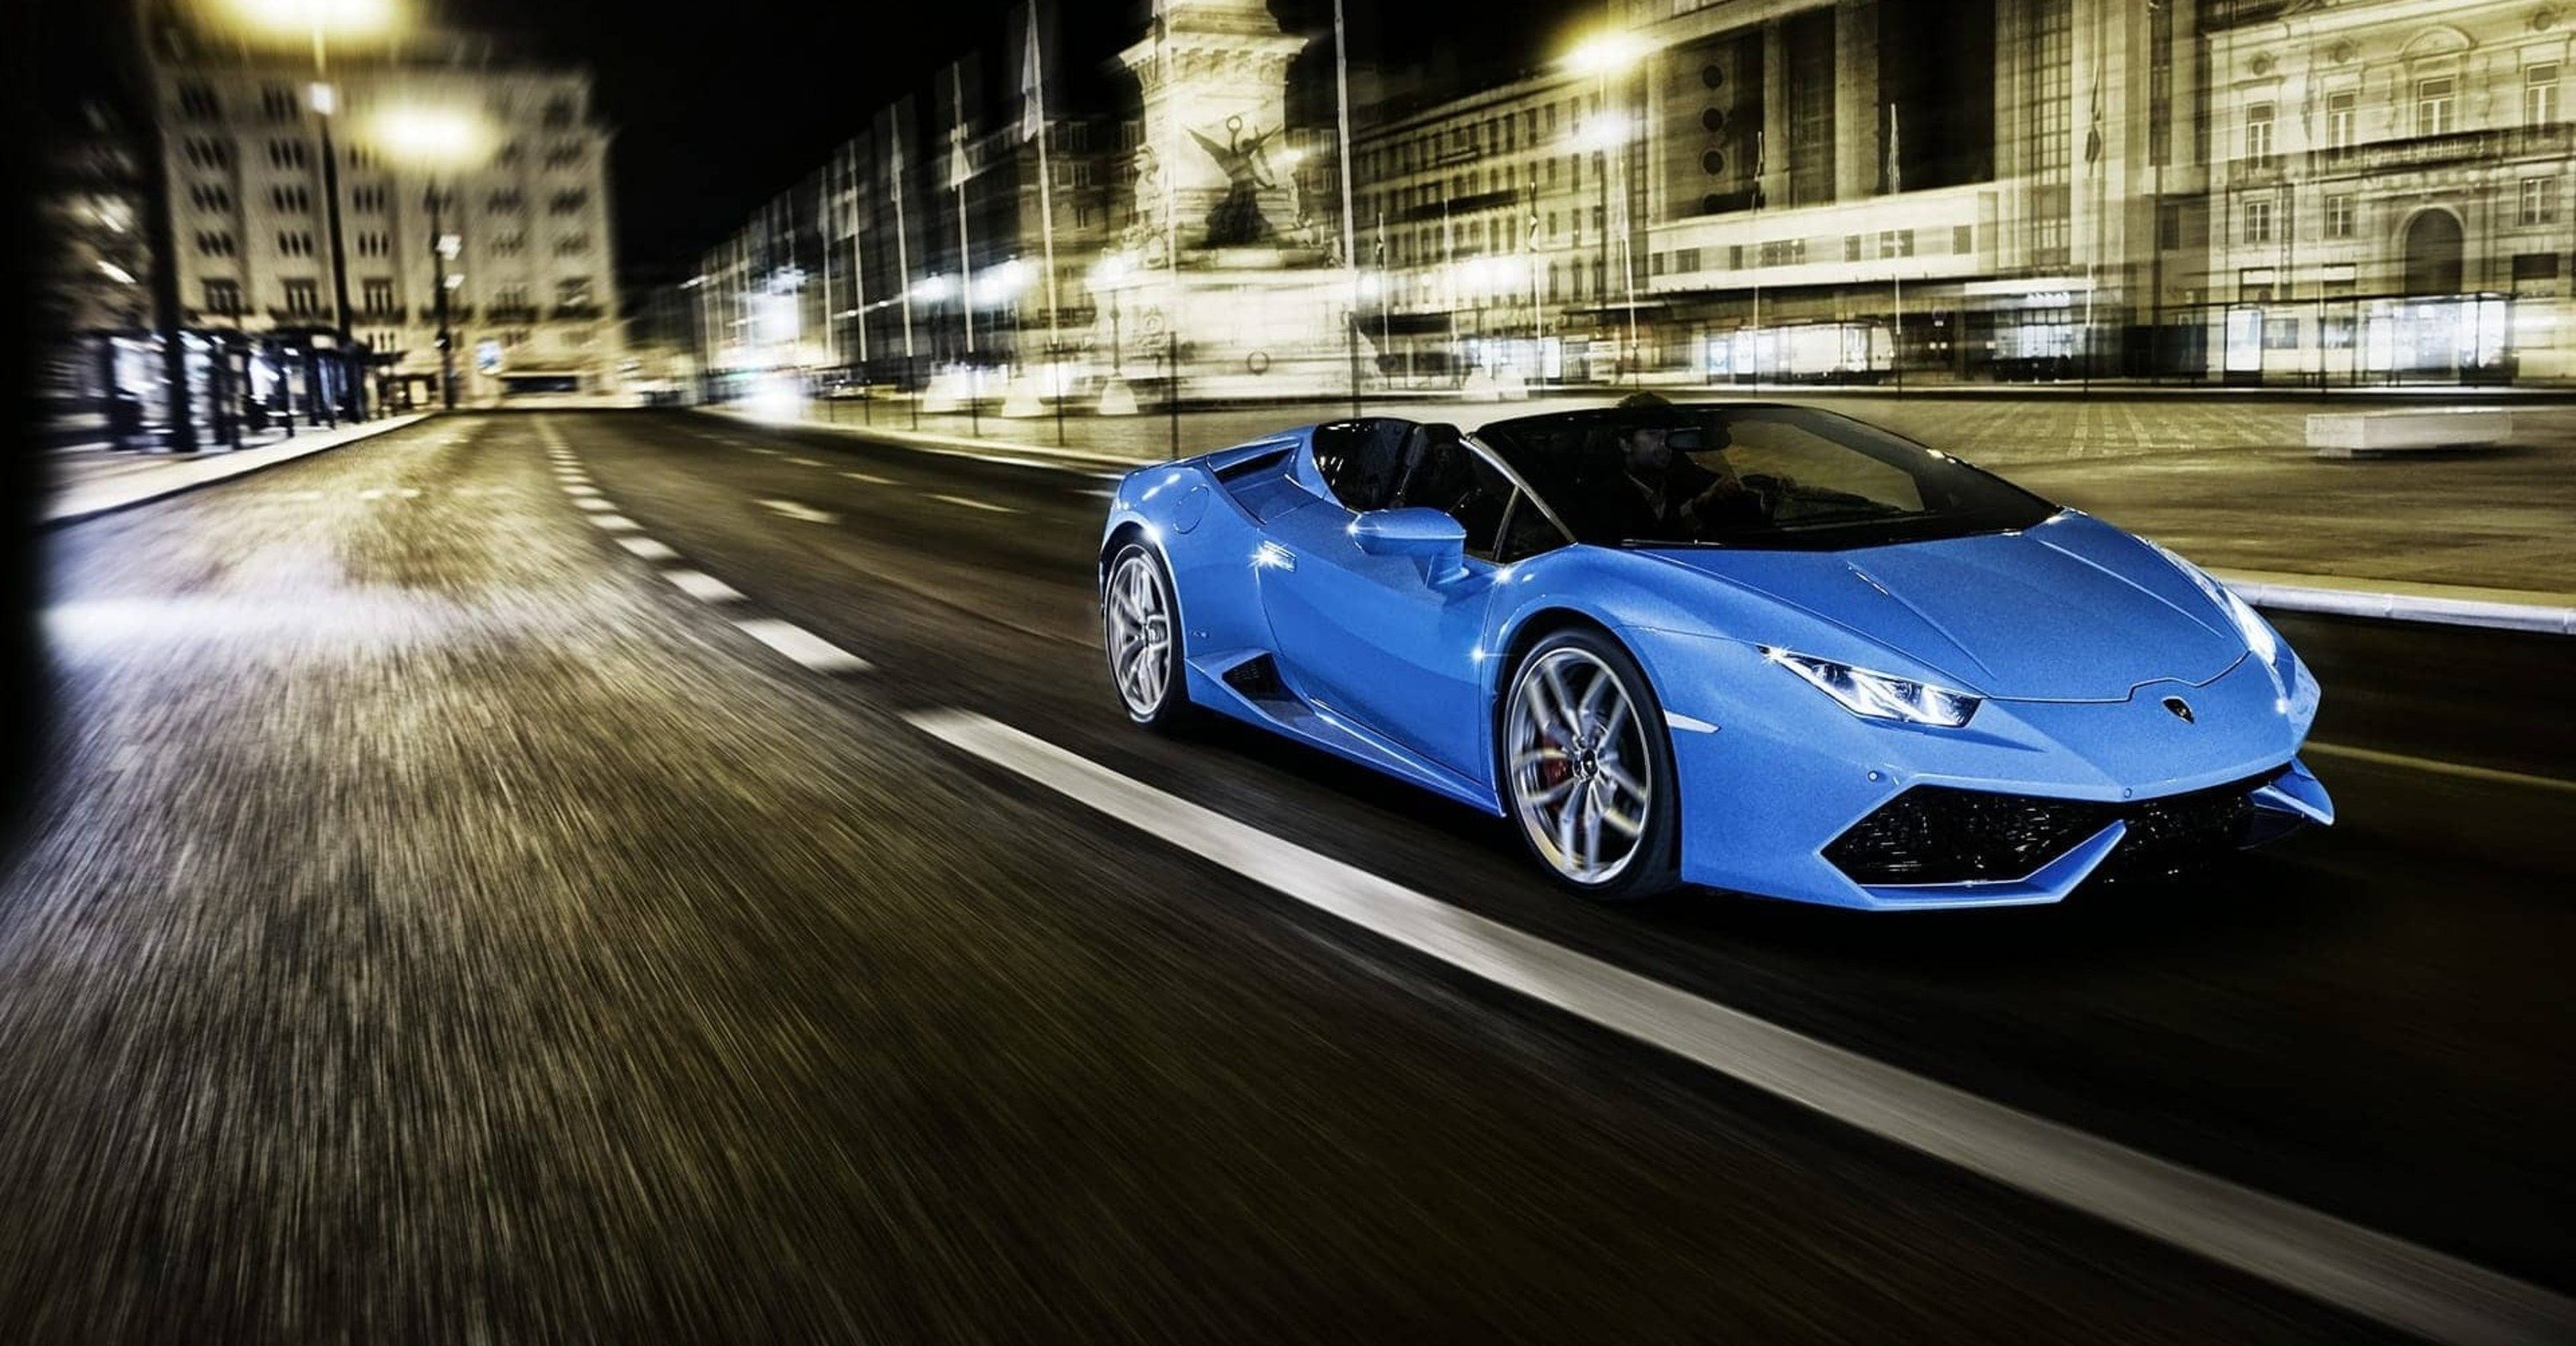 Danimarca: a 234 km/h con una Lamborghini, rischia la confisca definitiva dell&#039;auto